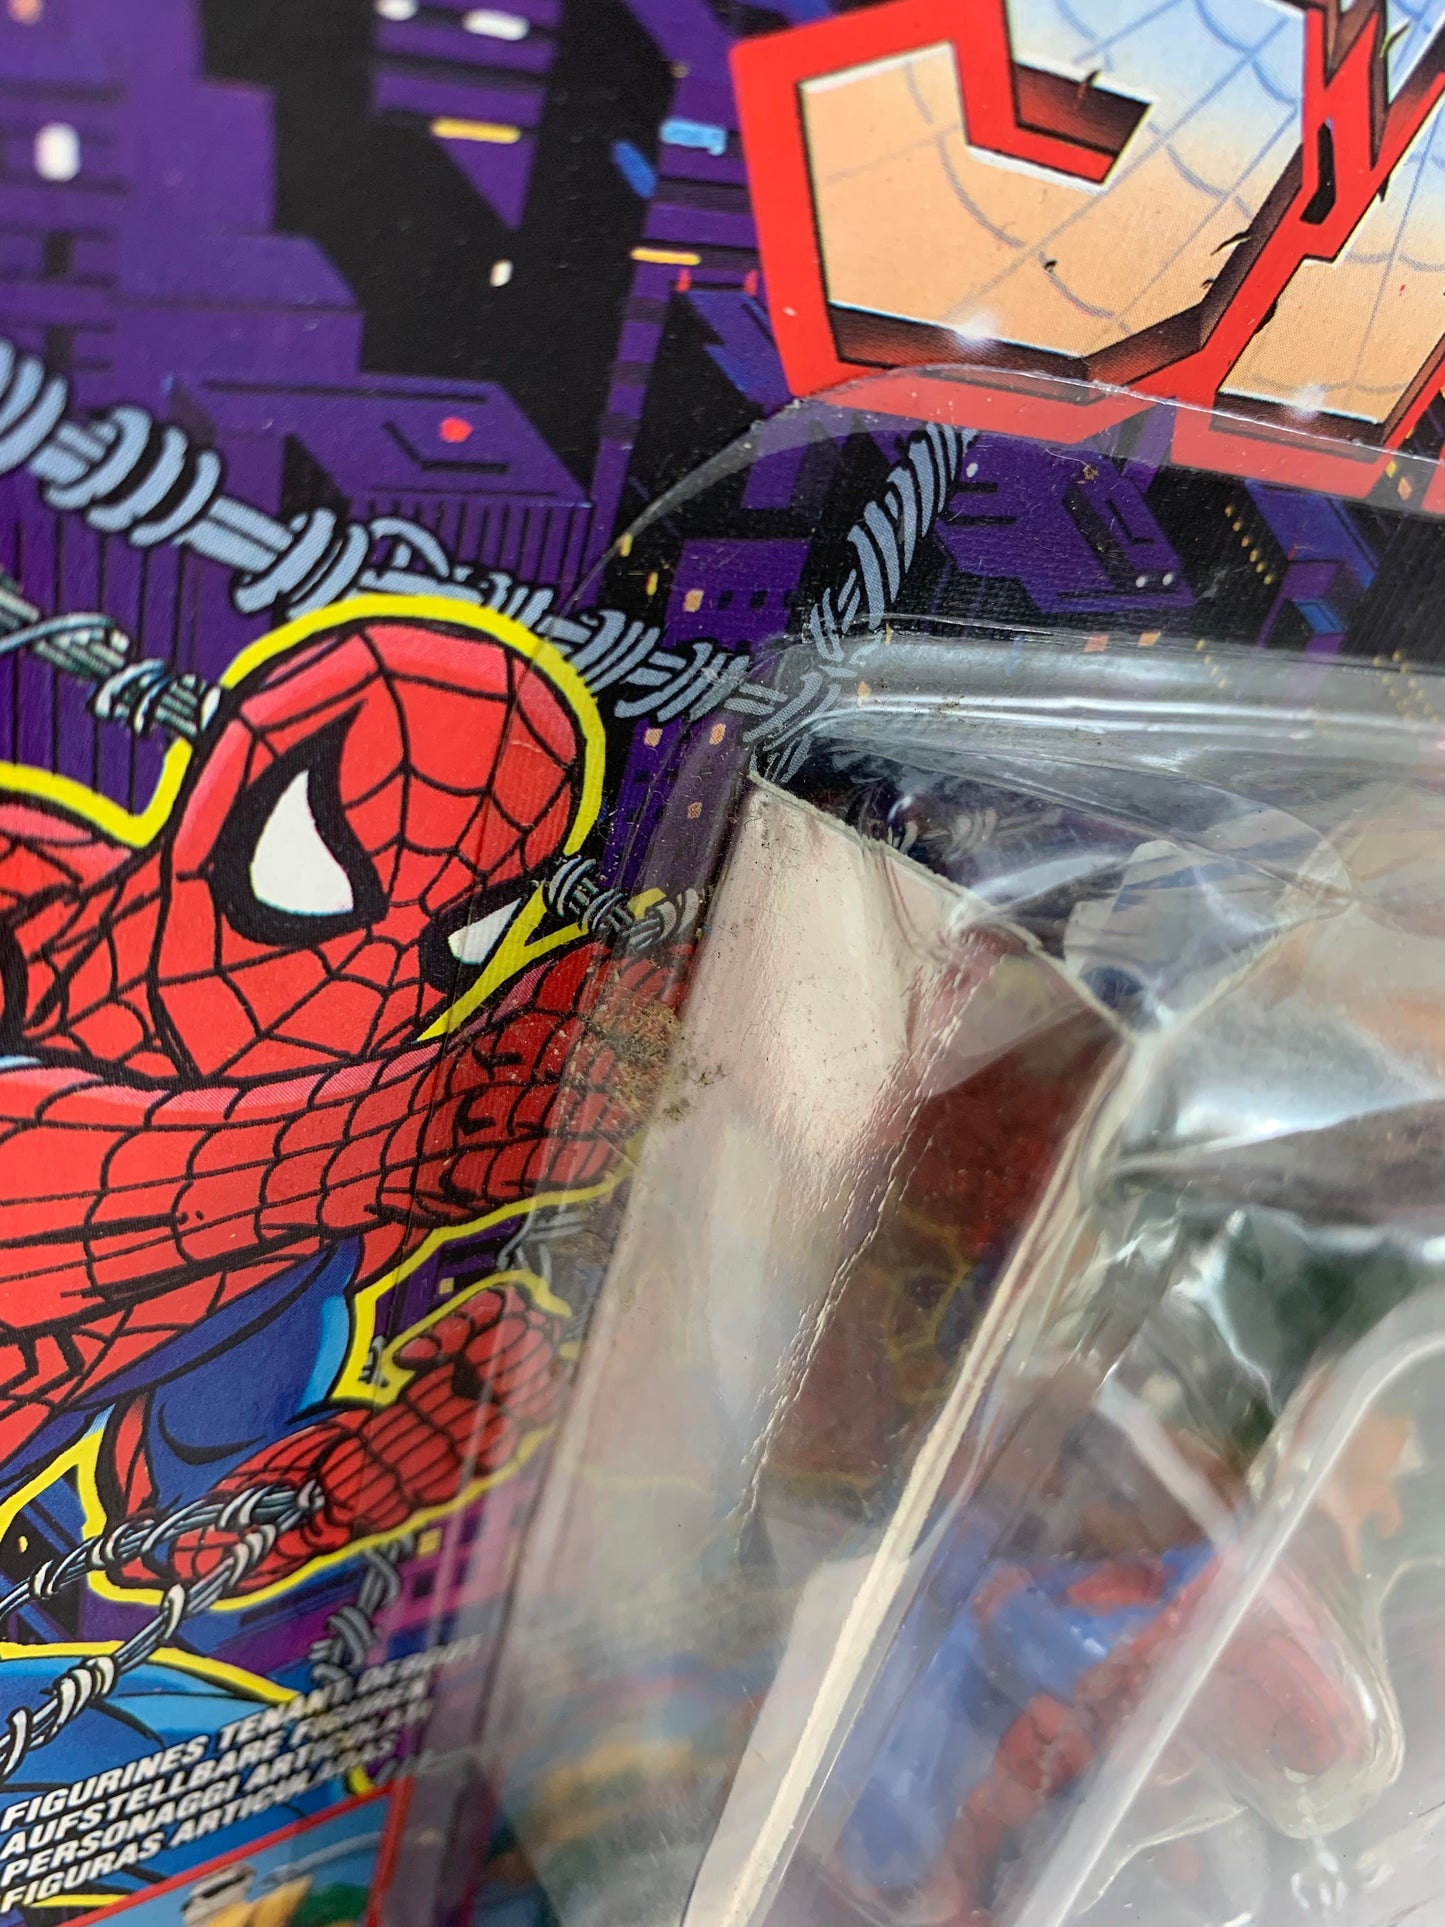 Toy Biz MOC Vintage Marvel Spider-Man vs Dr. Octopus Die Cast Web Of Steel Action Figure 1994 - MOC